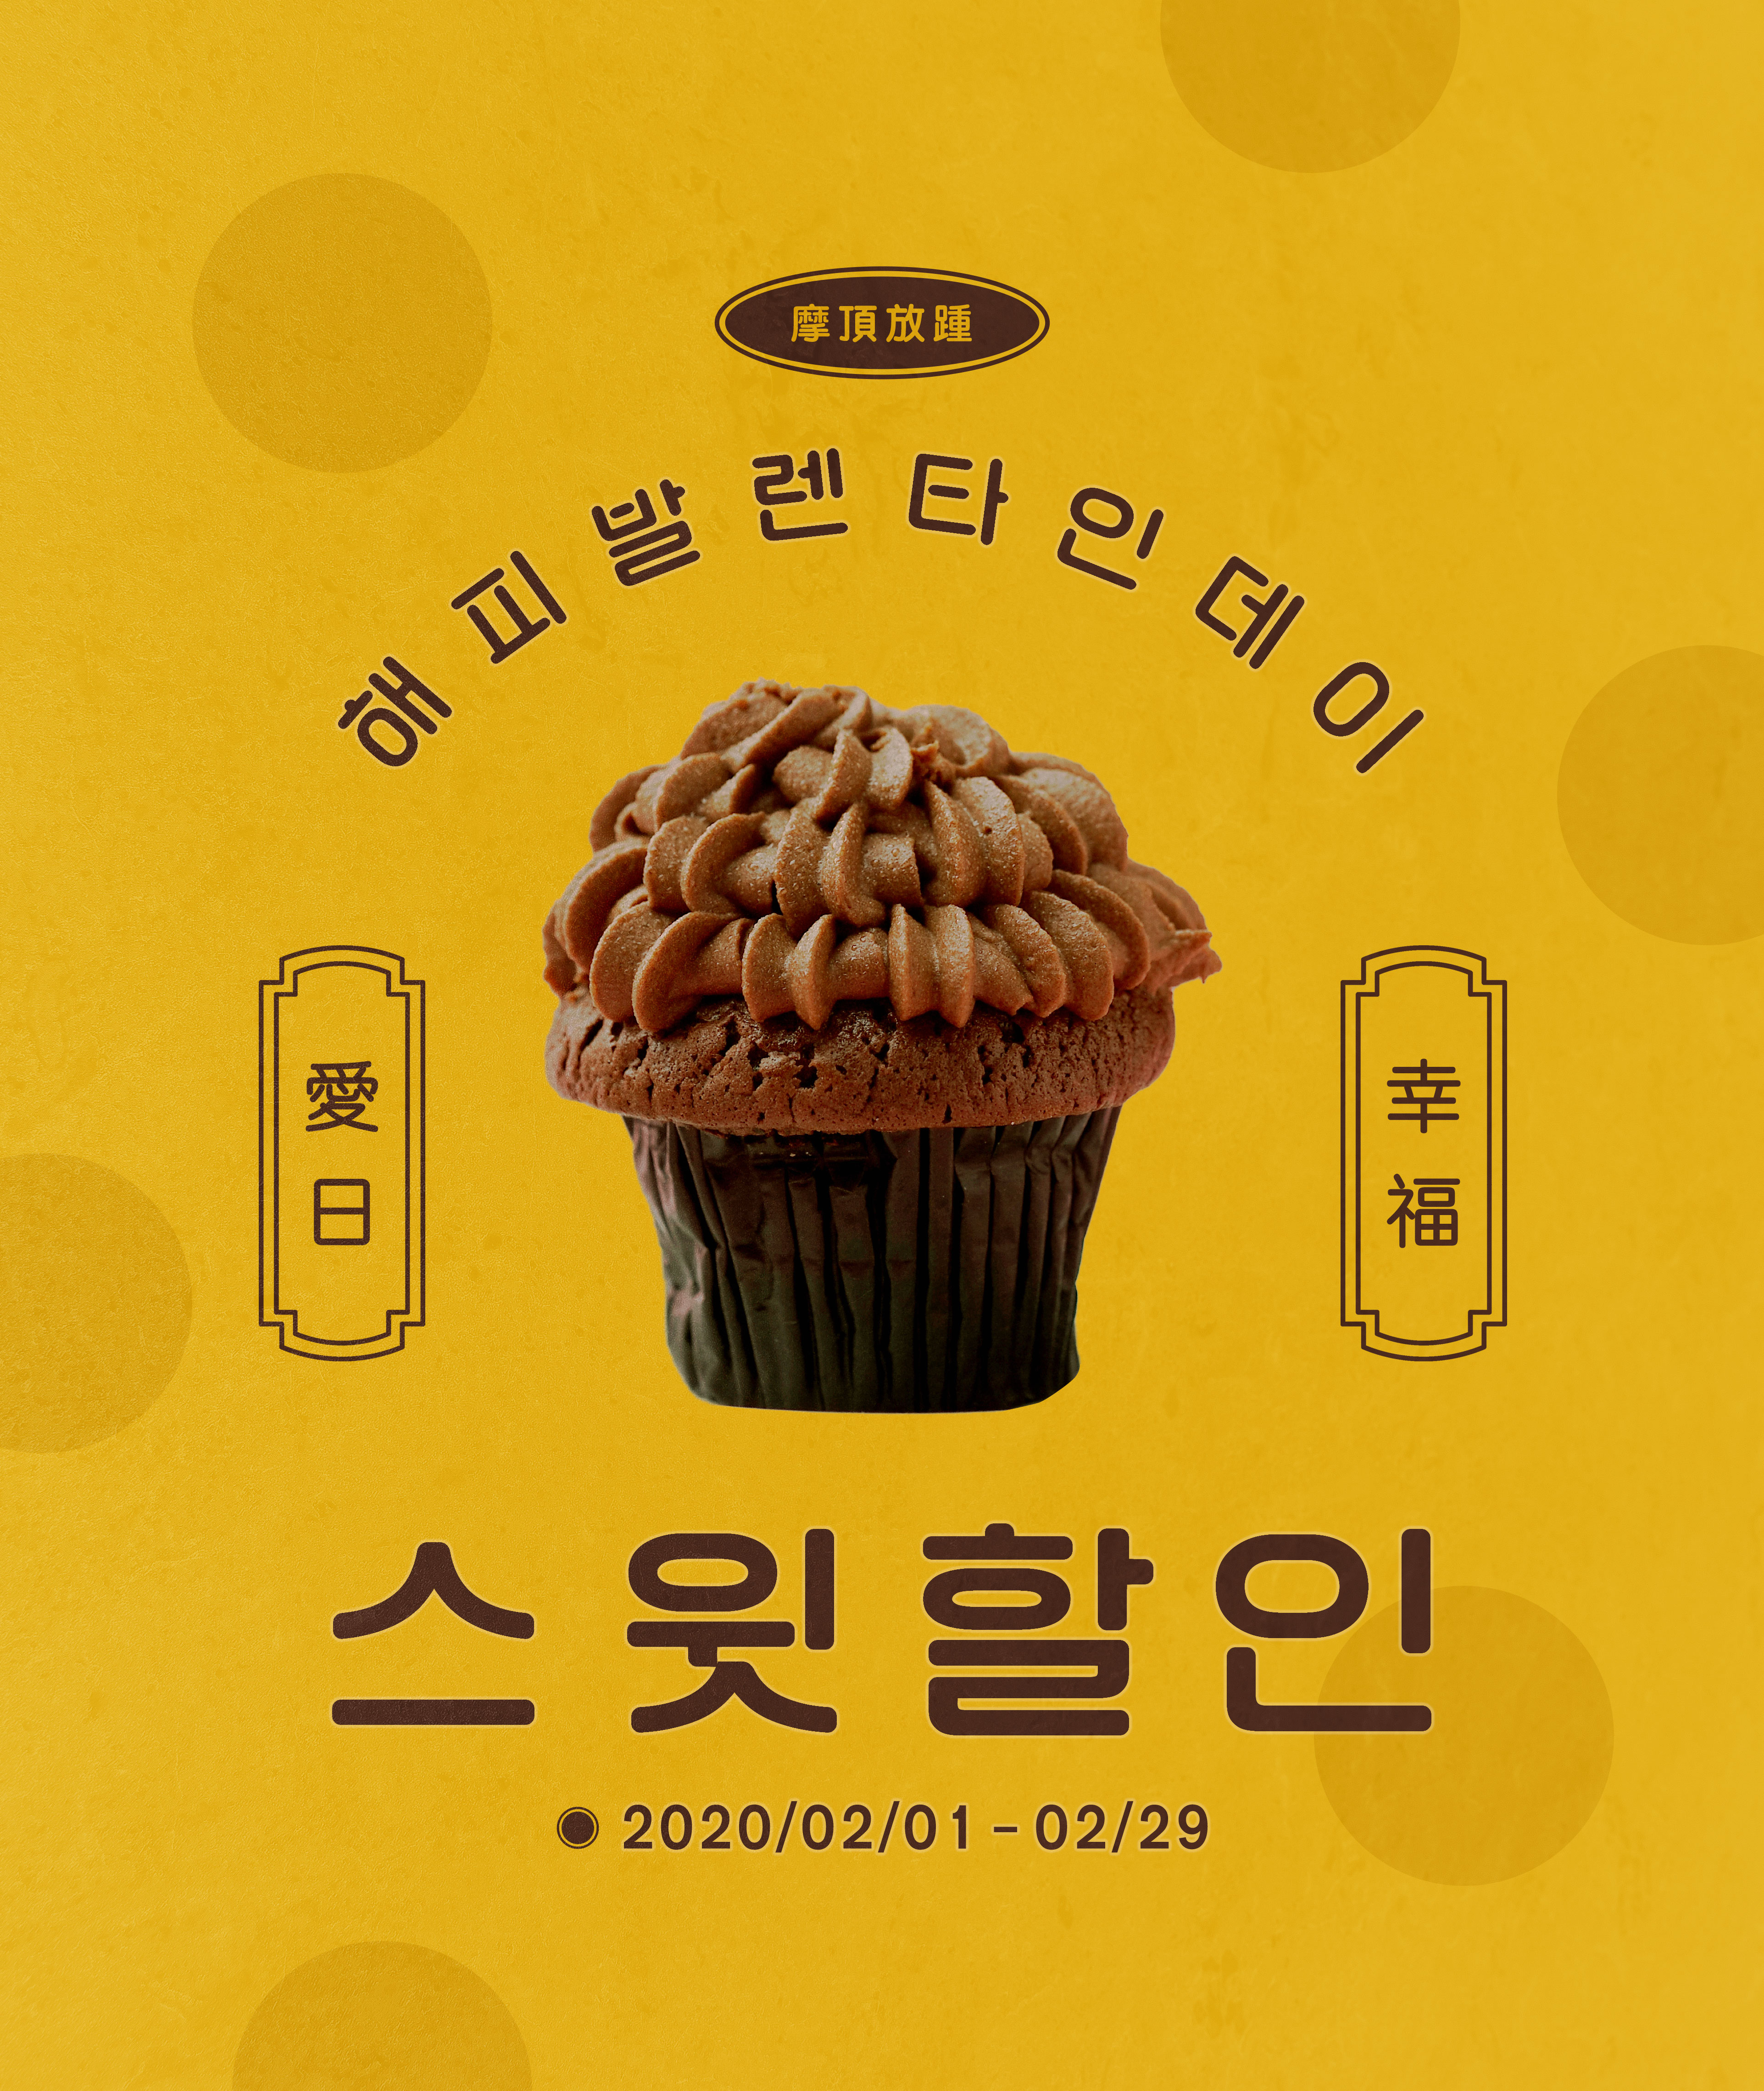 情人节甜品蛋糕促销活动海报PSD素材第一素材精选韩国素材插图